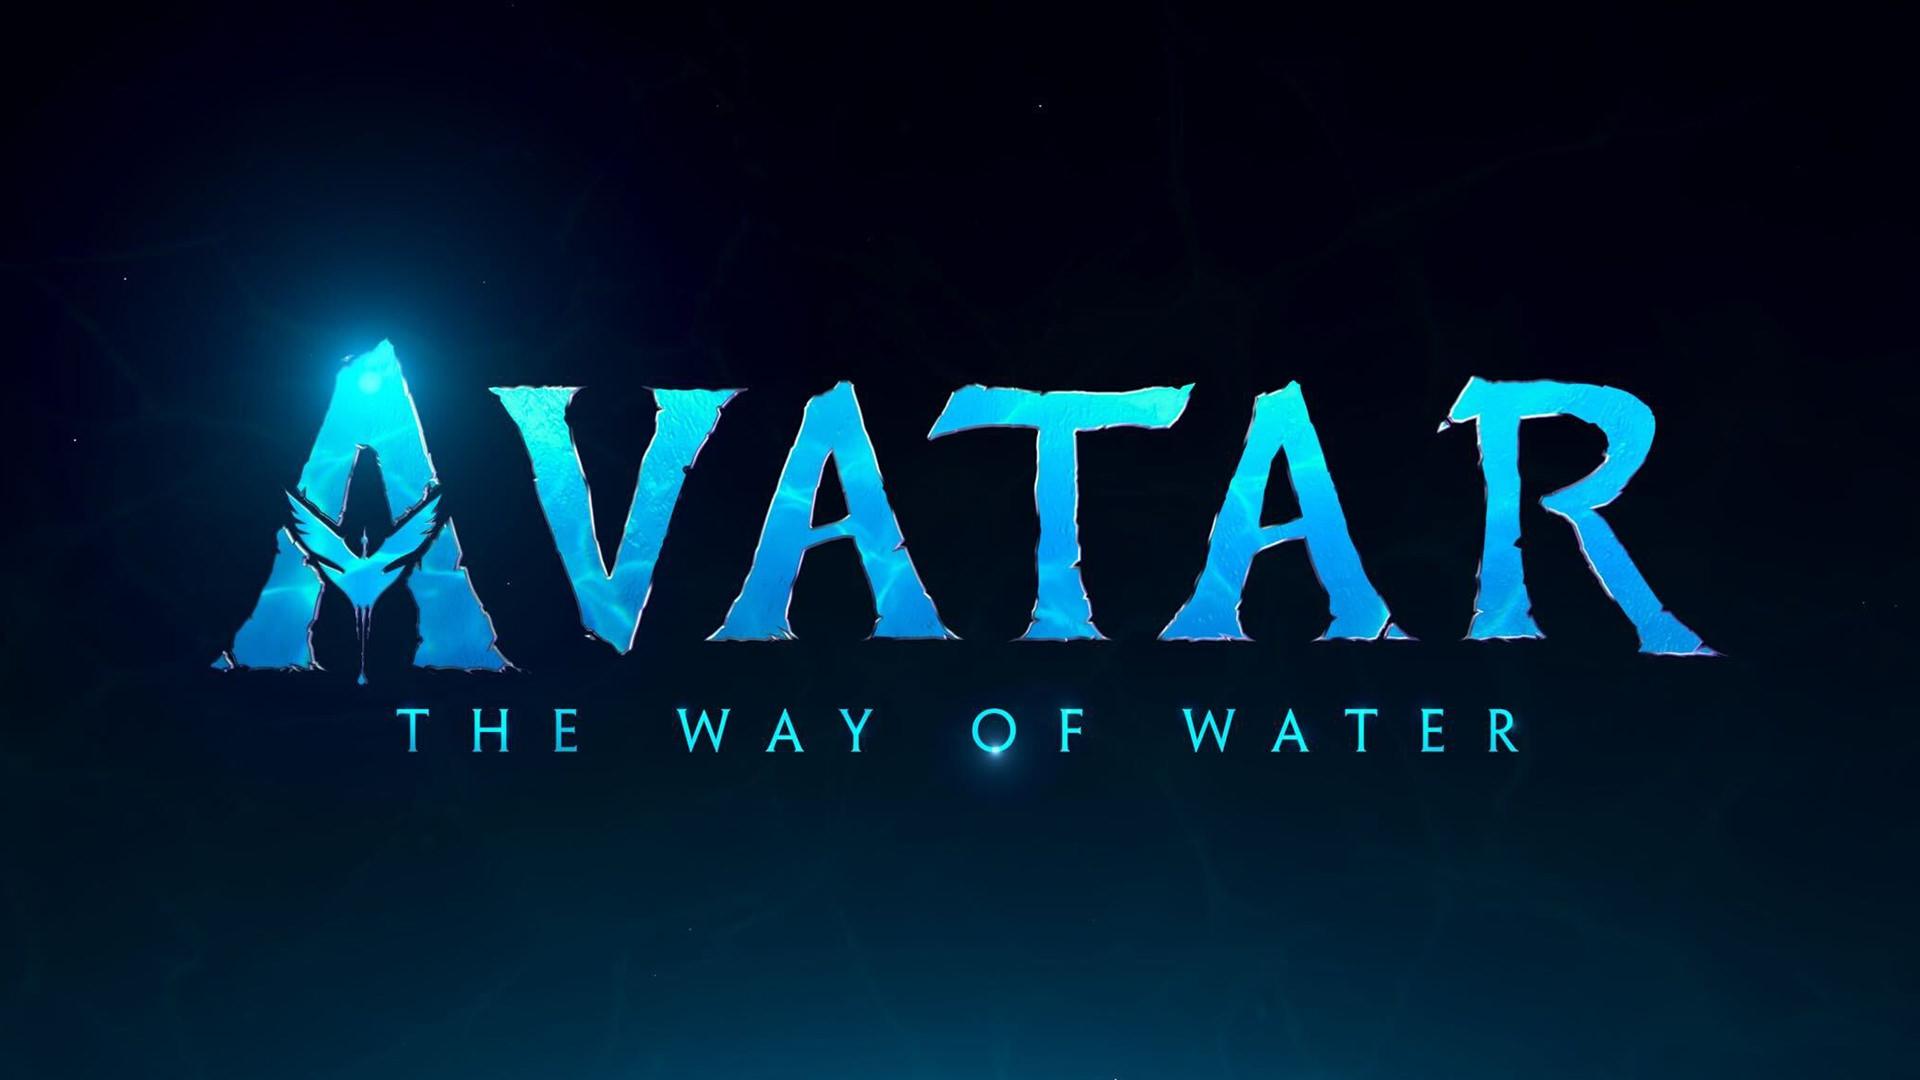 بازگشت به پاندورا در تریلر فیلم Avatar: The Way of Water